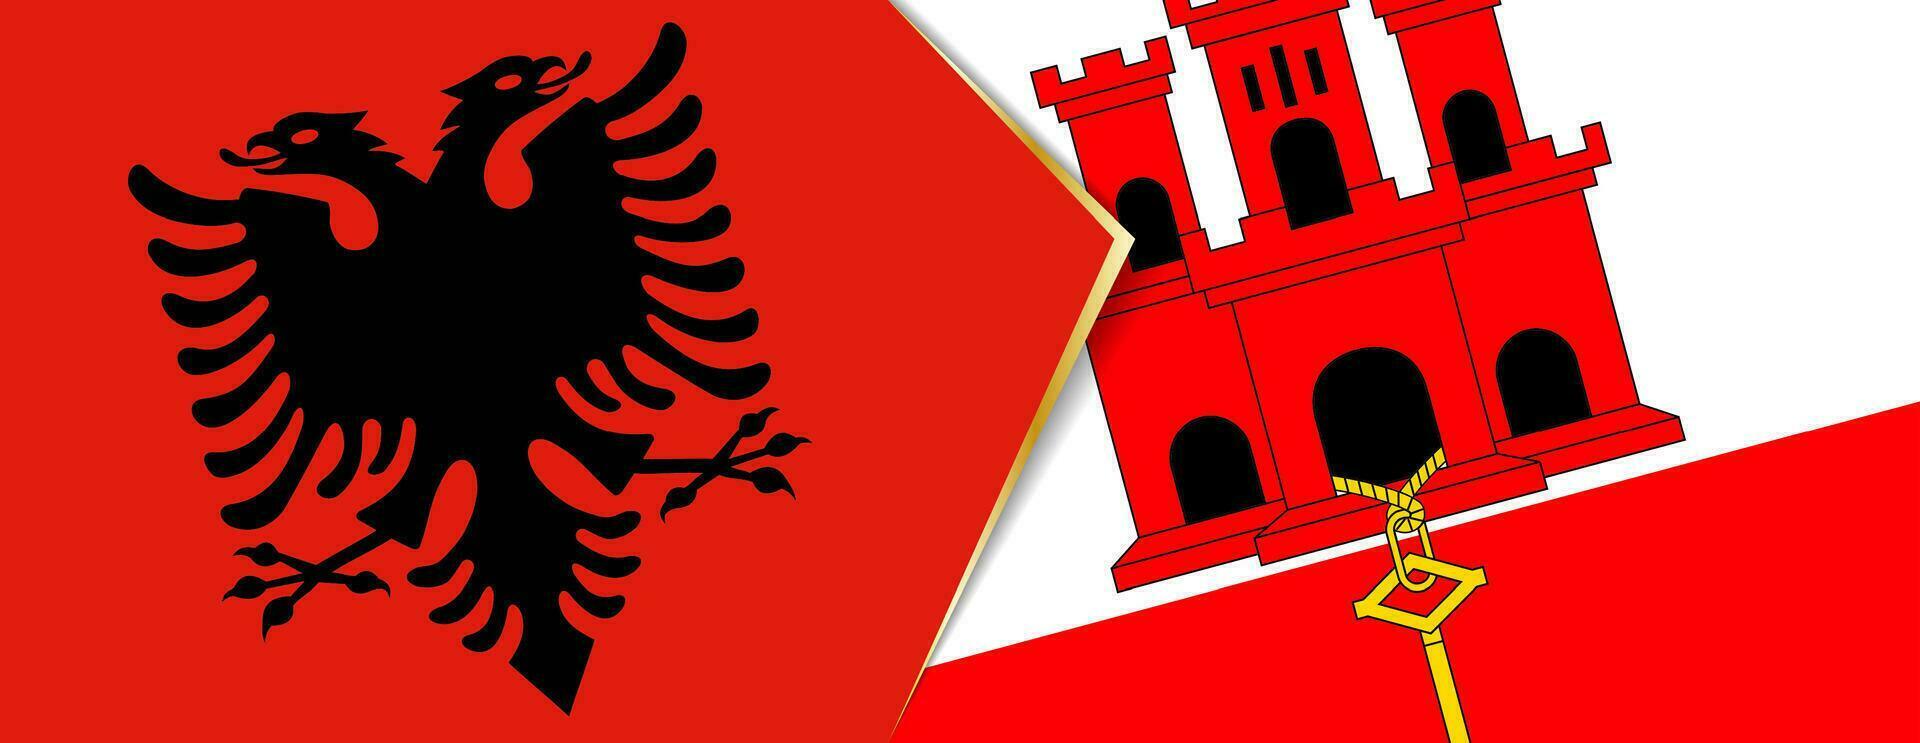 Albanien und Gibraltar Flaggen, zwei Vektor Flaggen.